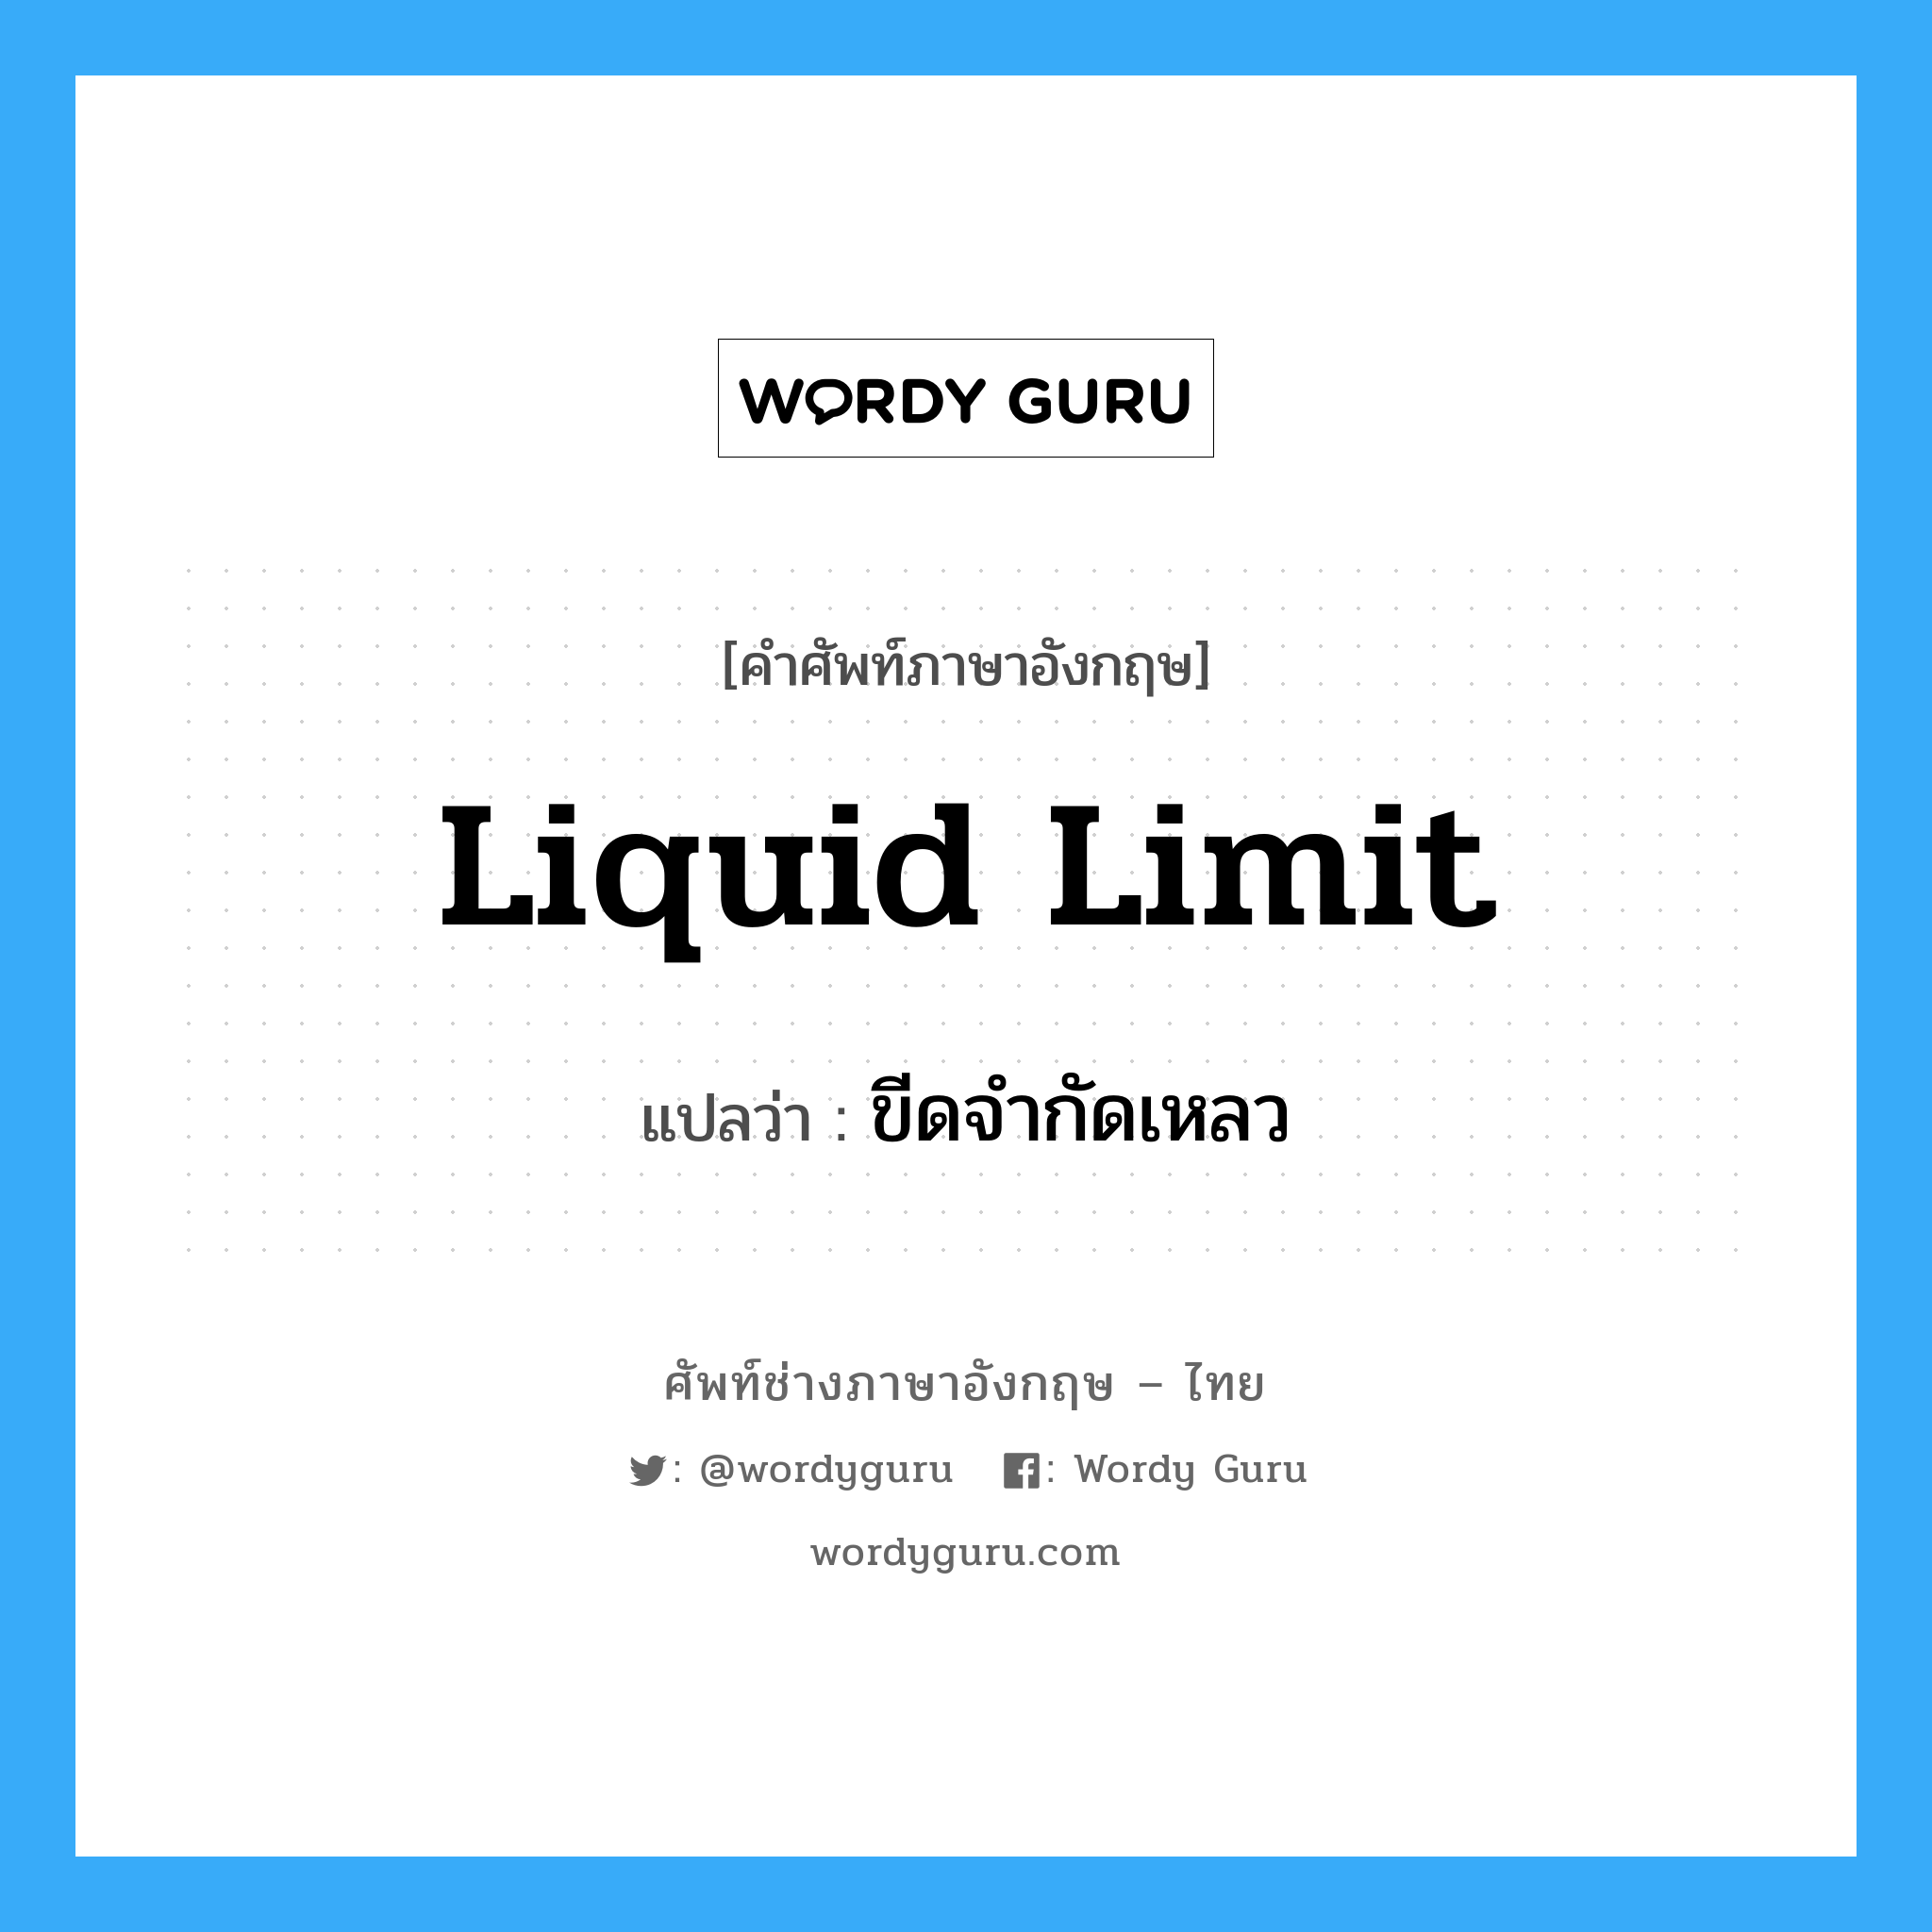 liquid limit แปลว่า?, คำศัพท์ช่างภาษาอังกฤษ - ไทย liquid limit คำศัพท์ภาษาอังกฤษ liquid limit แปลว่า ขีดจำกัดเหลว